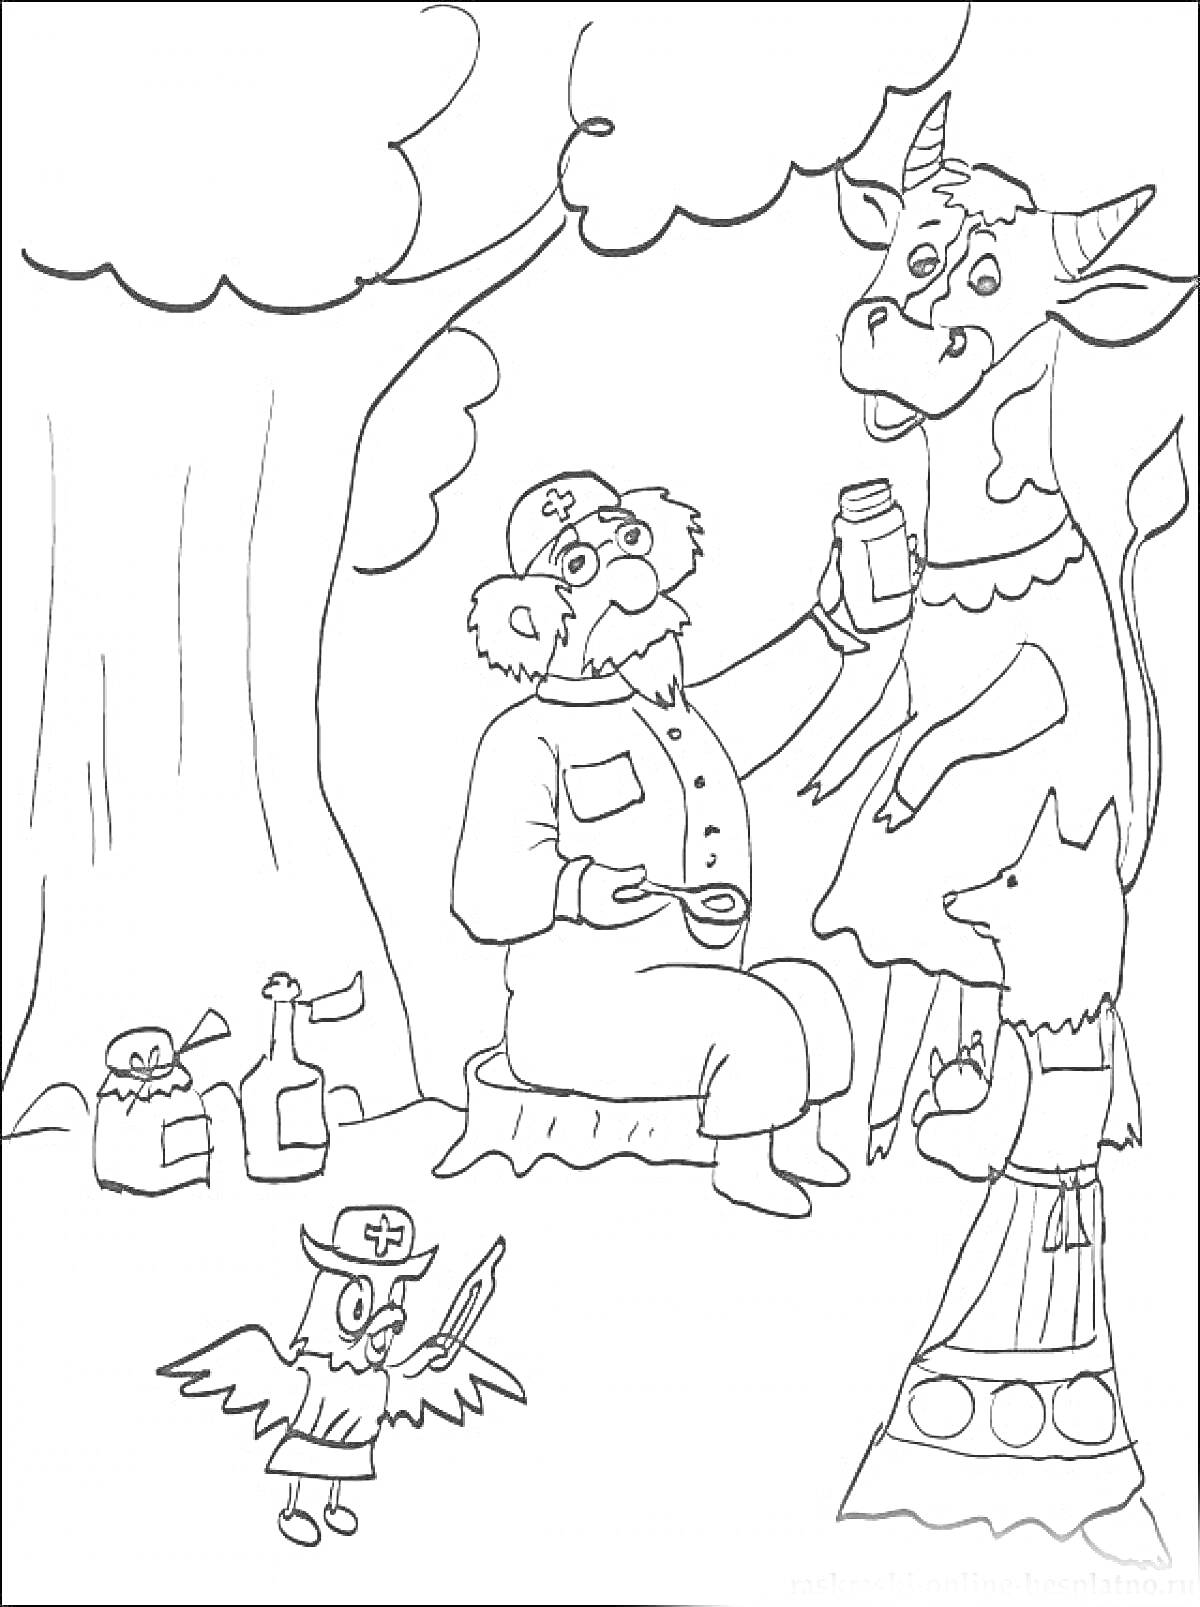 Доктор Айболит лечит корову с помощью помощников-сова и лиса, под деревом